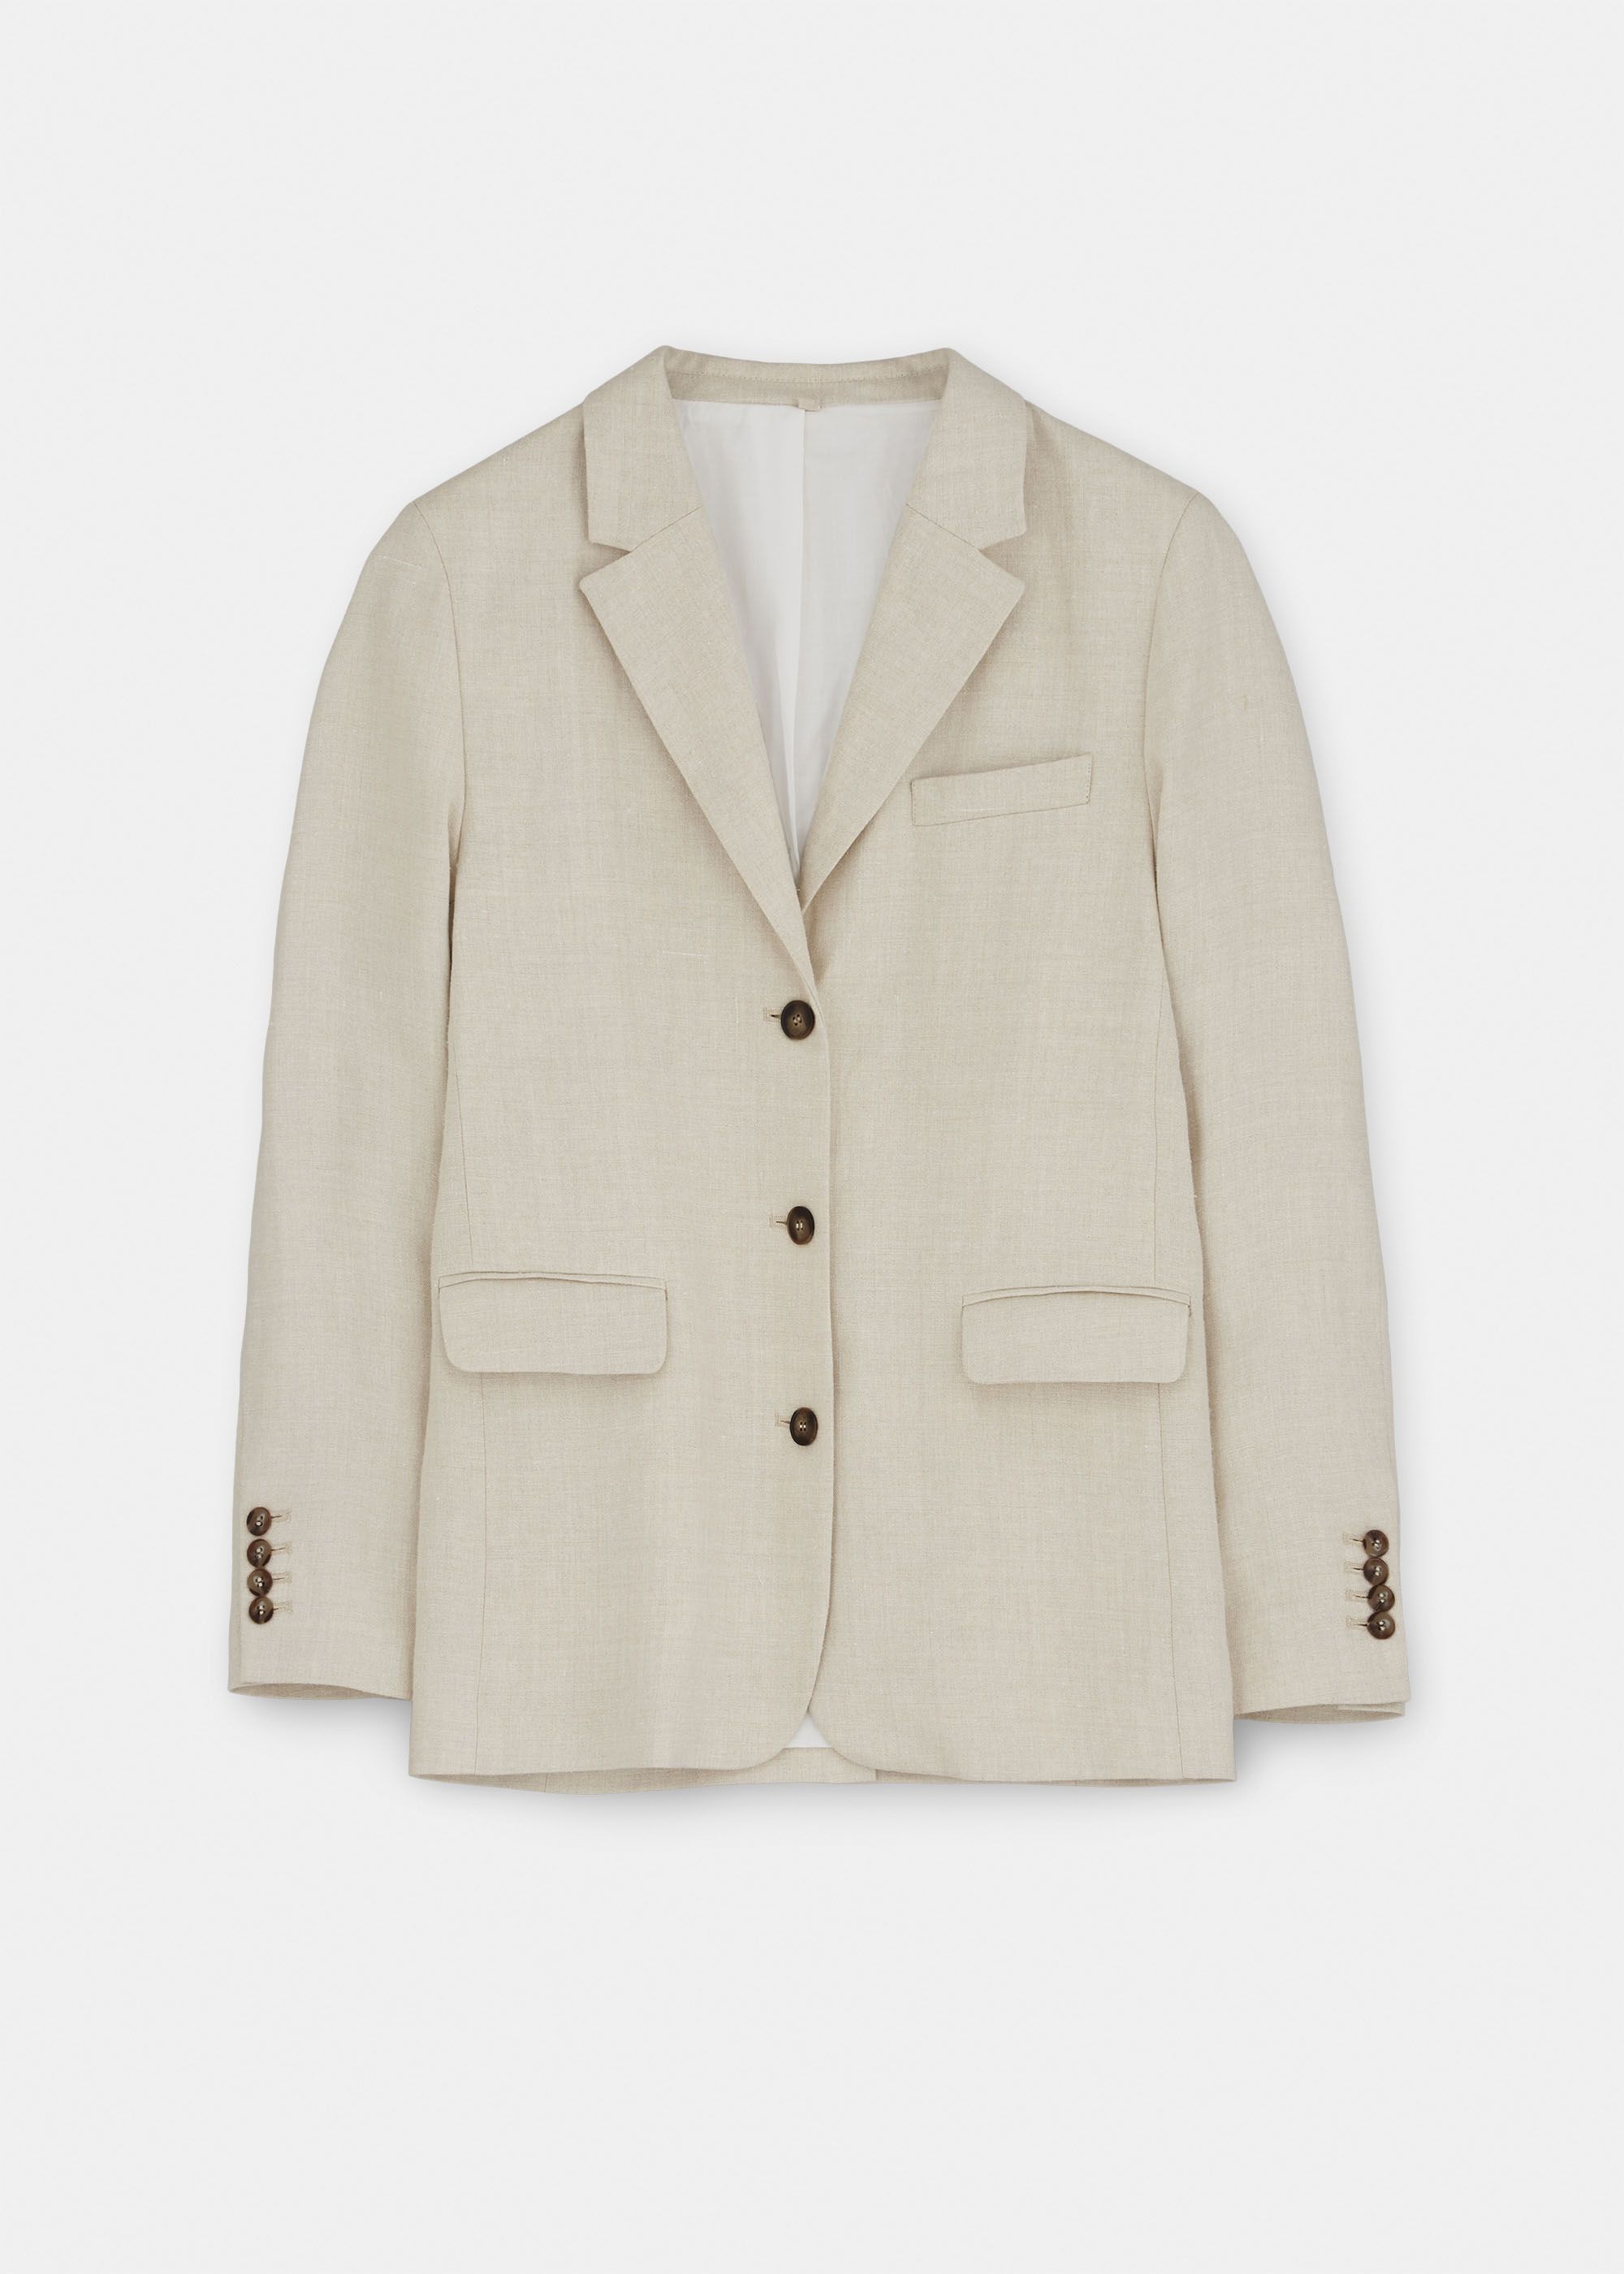 Outerwear - Mason Jacket Tailored Linen